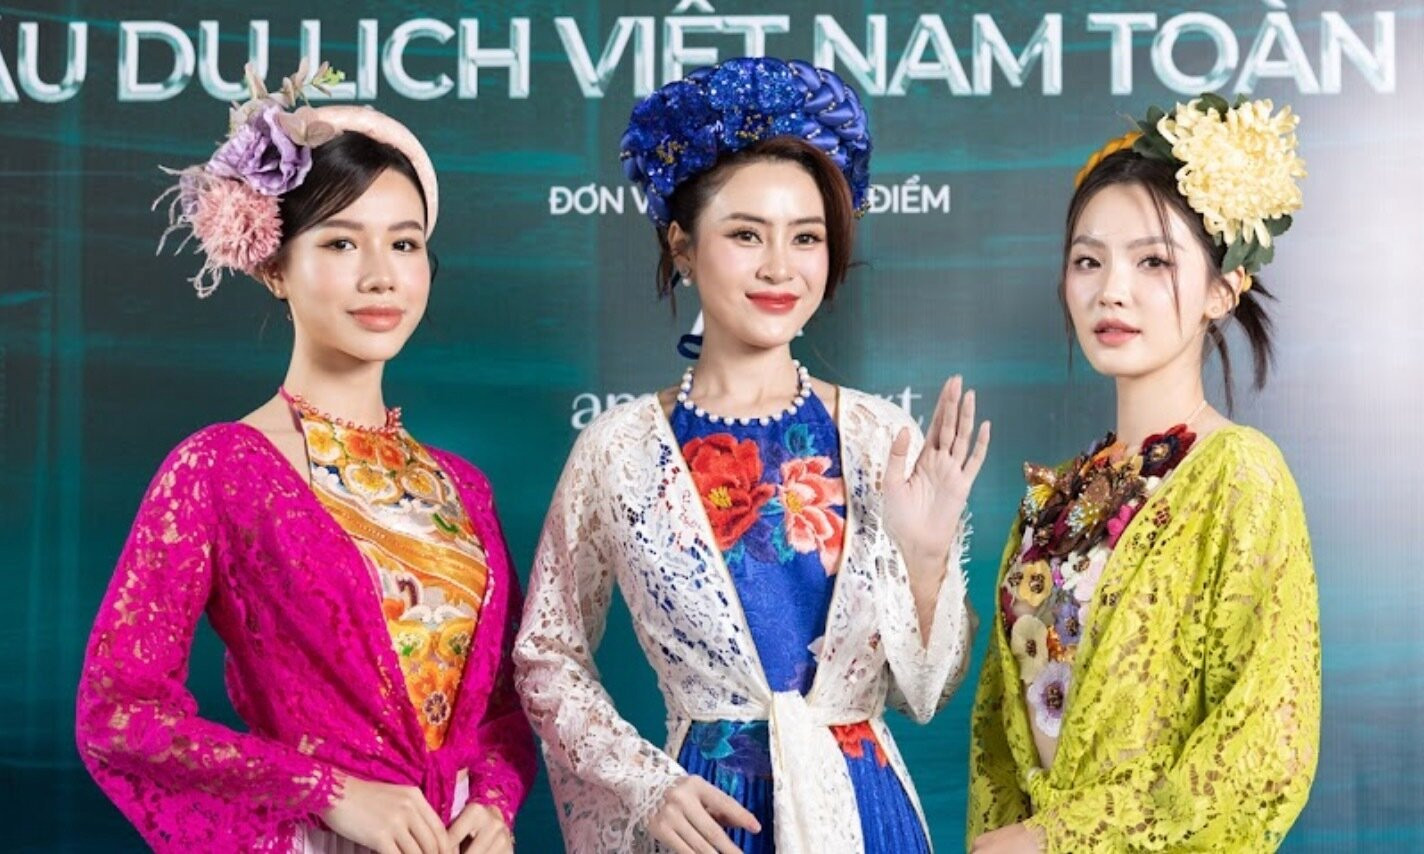 Top 3 Hoa hậu Du lịch Việt Nam toàn cầu 2021.